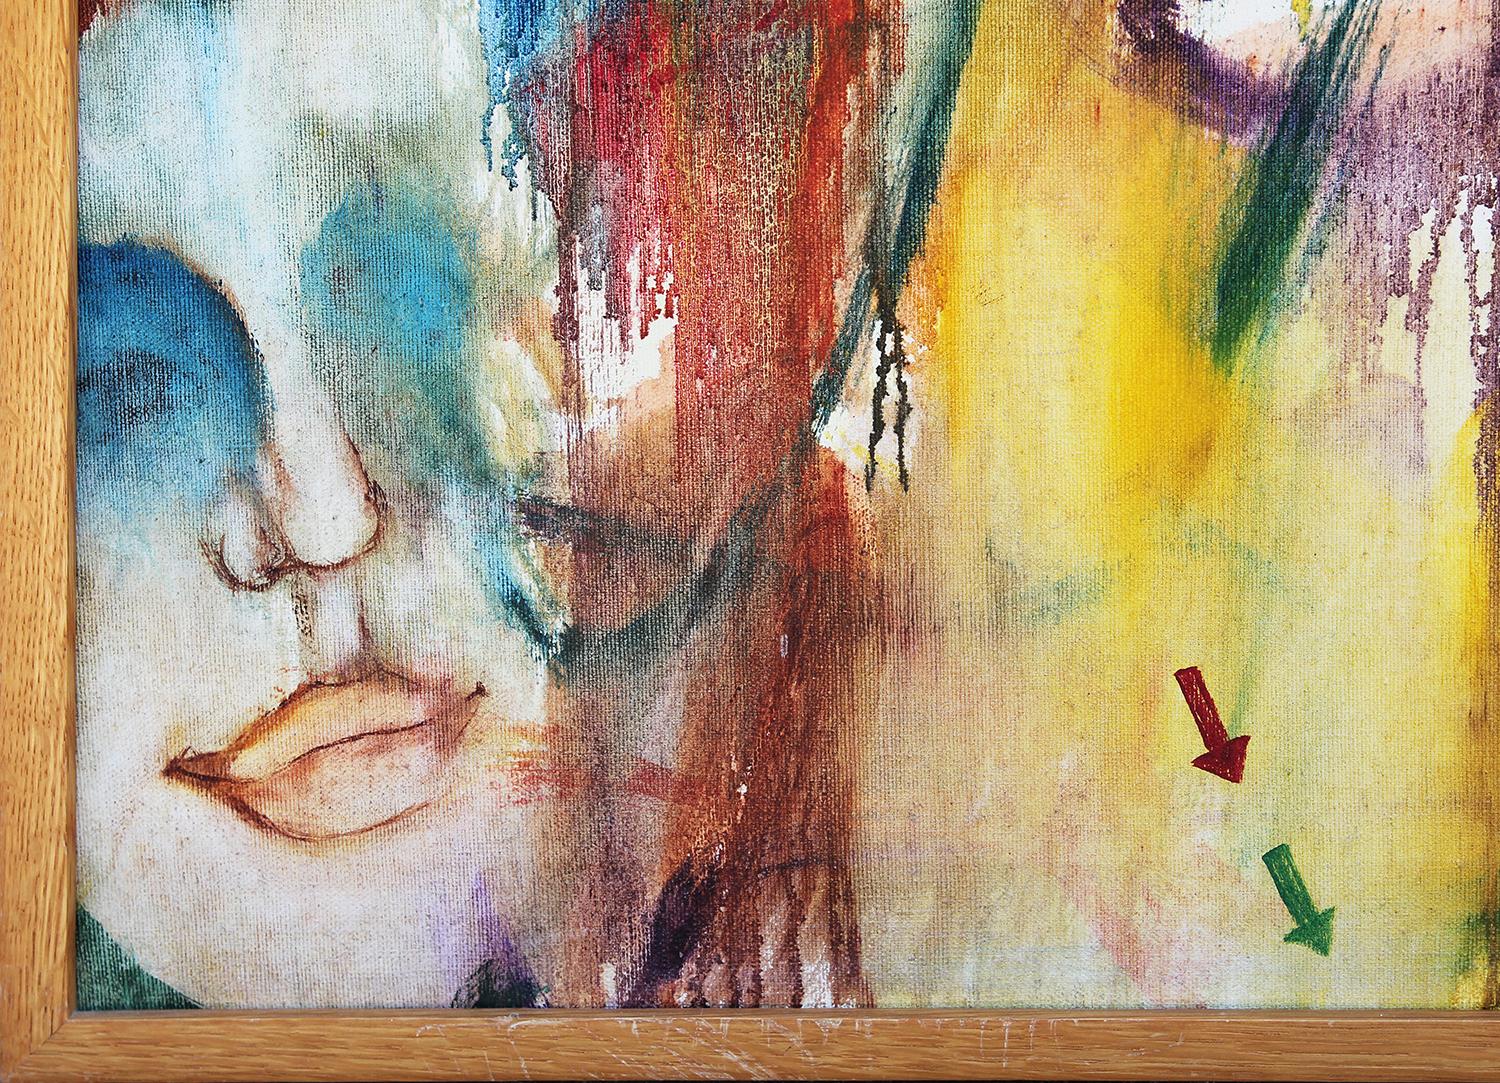 Modernes farbenfrohes abstraktes Gemälde des texanischen Künstlers Don Snell. Das Werk zeigt zwei weibliche Figuren in der Mitte und ein drittes Gesicht in der linken unteren Ecke. In der rechten Ecke sitzt ein großer Vogel im Vordergrund. Signiert